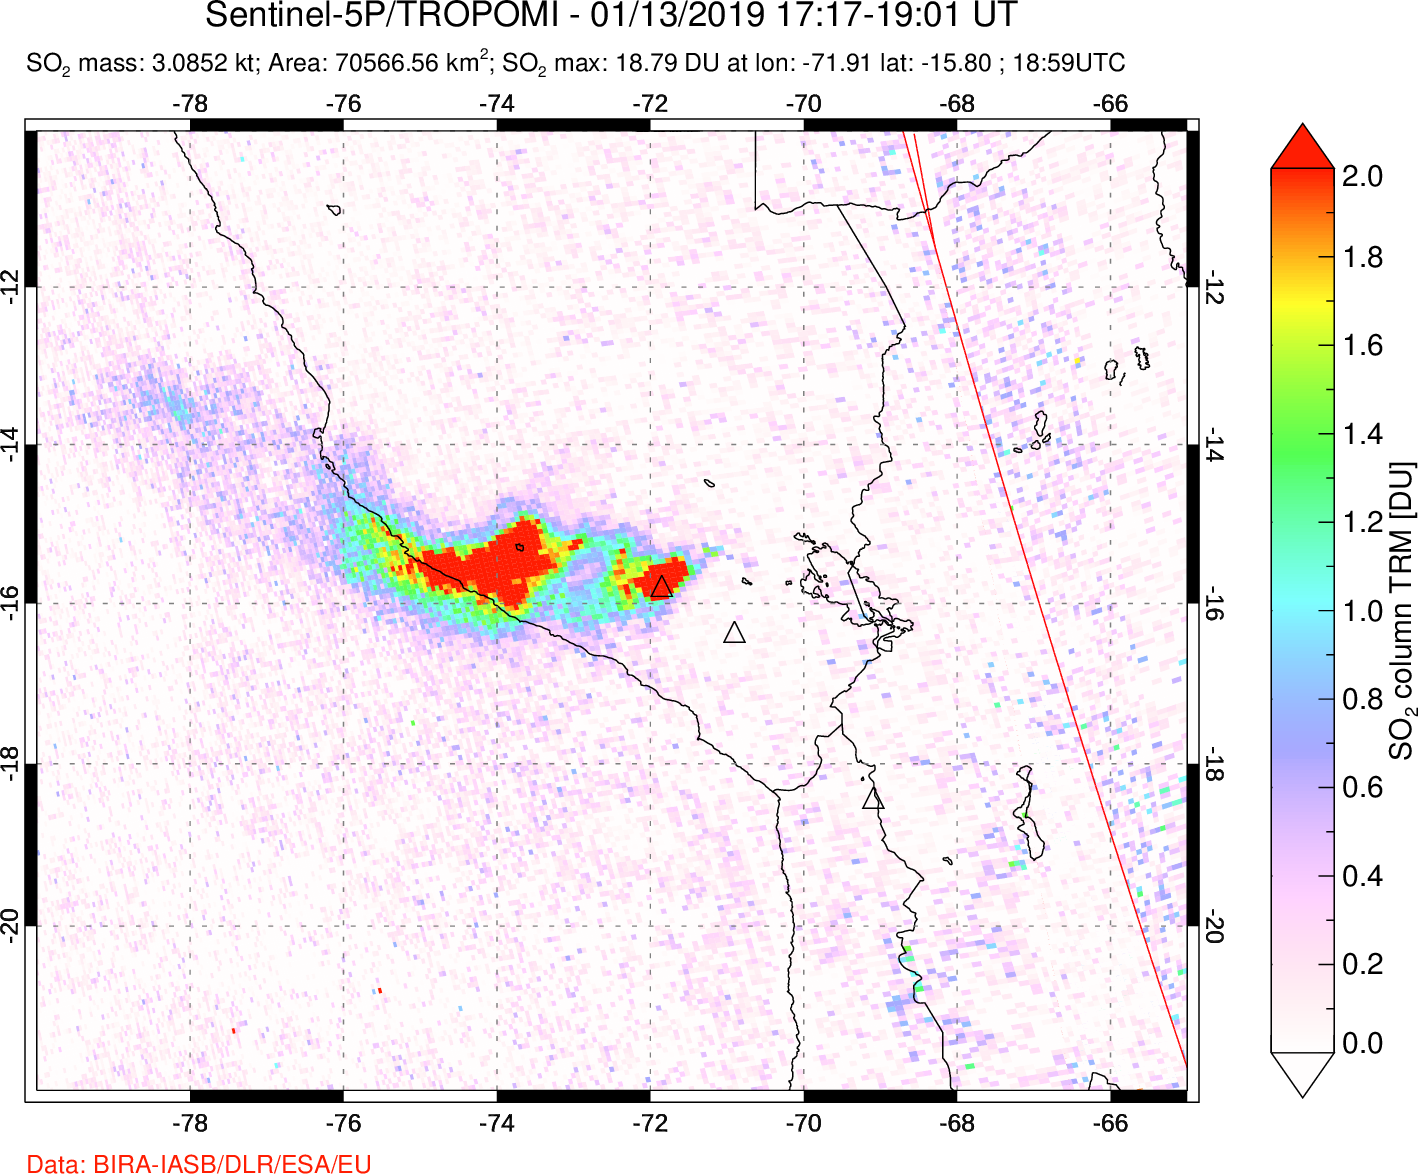 A sulfur dioxide image over Peru on Jan 13, 2019.